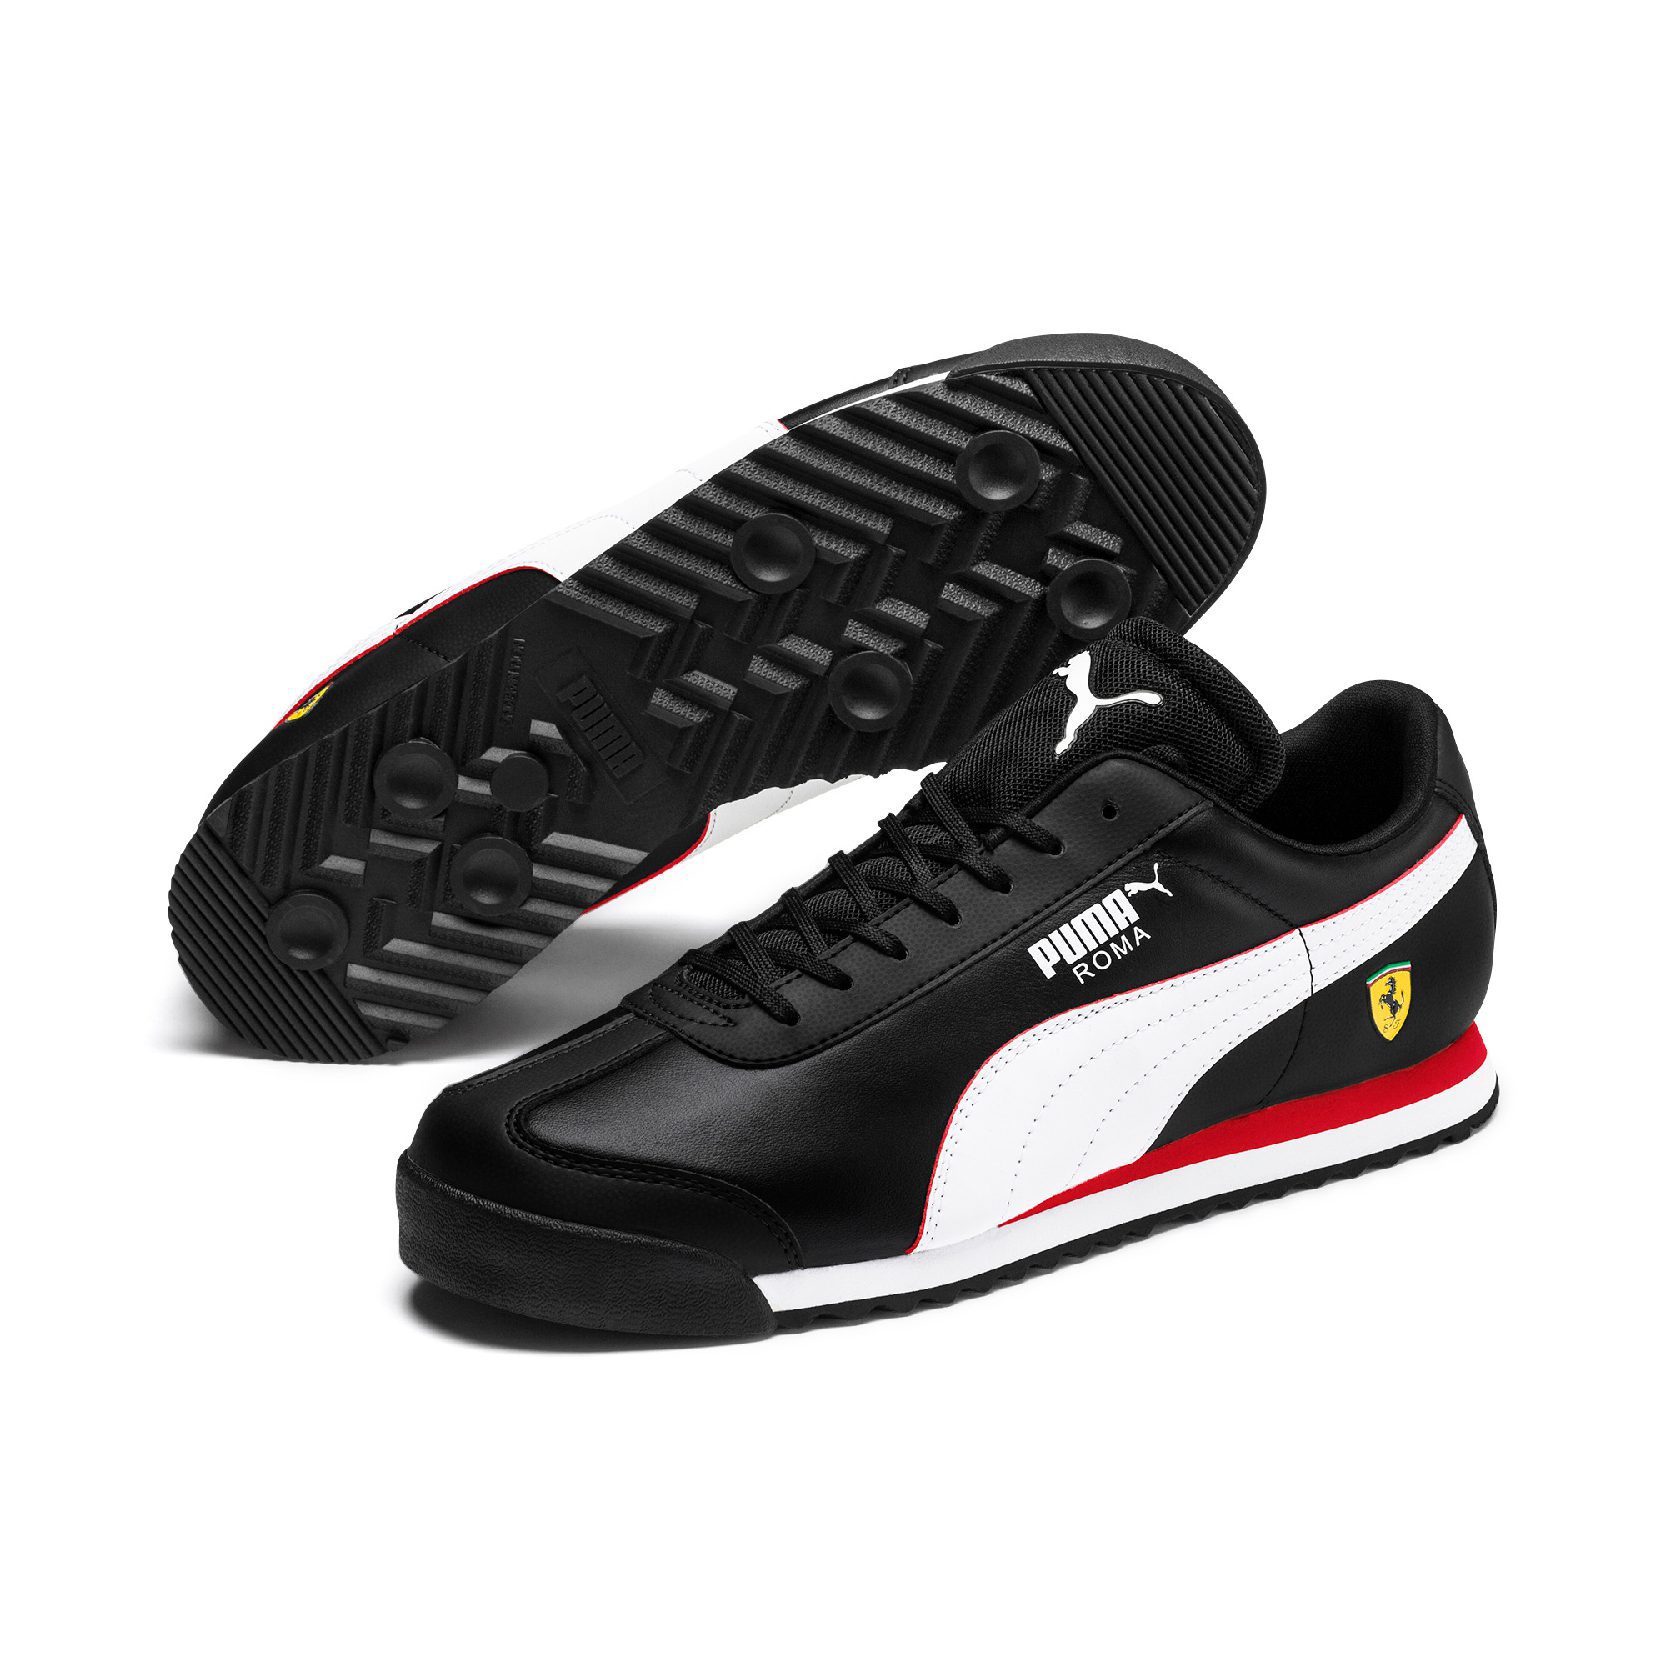 Puma Men's Scuderia Ferrari Roma Black/White/Rosso Corsa Sneakers ...